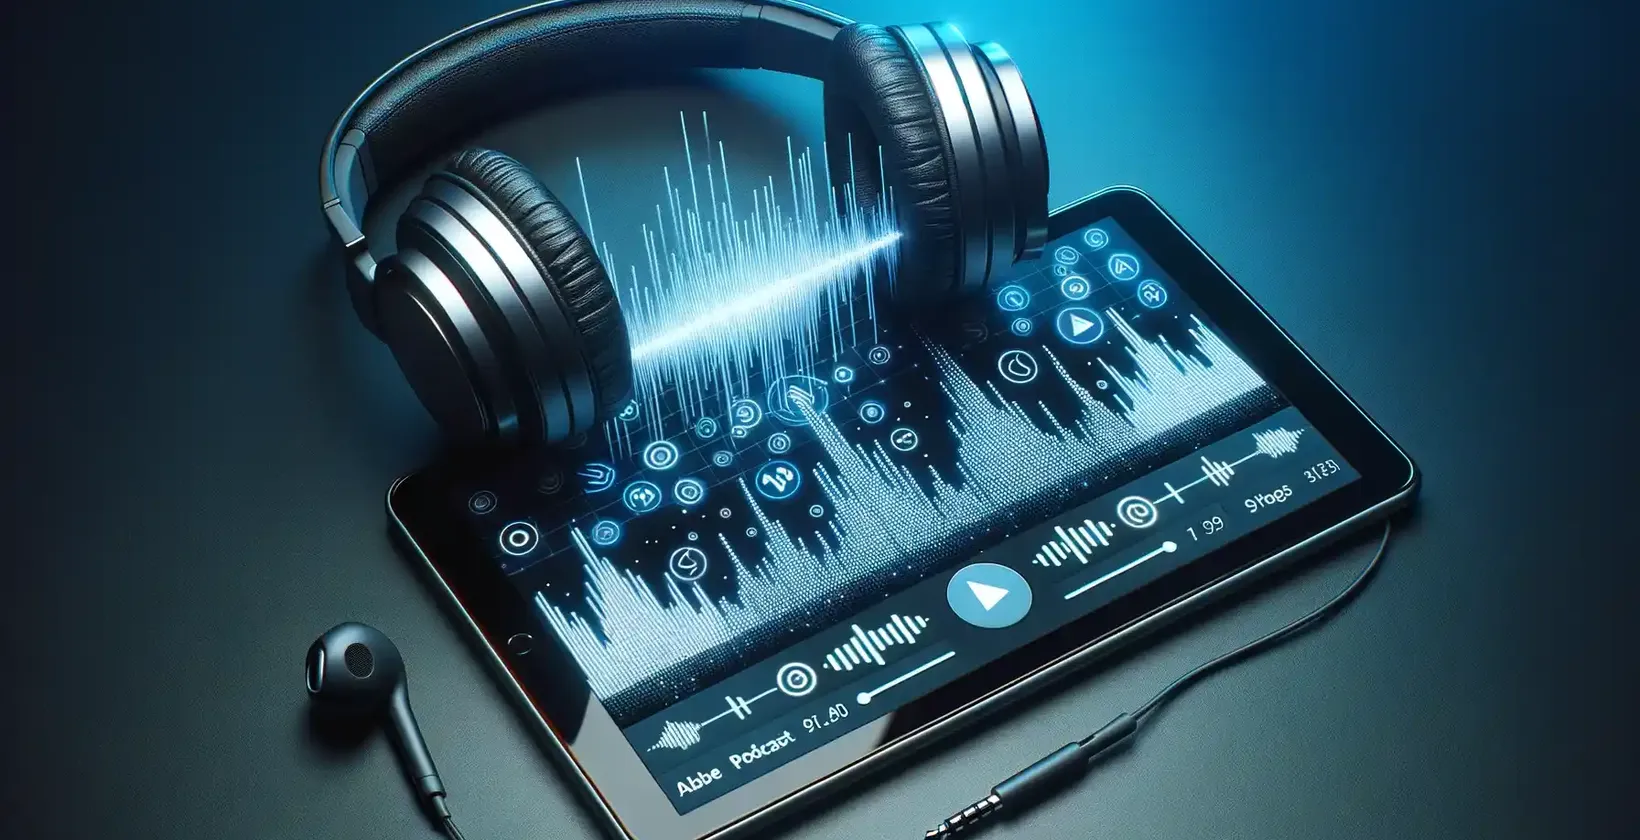 Der Bildschirm des Tablets zeigt Schallwellen, digitale Tasten und Einstellungen auf einem tiefblauen Hintergrund an.